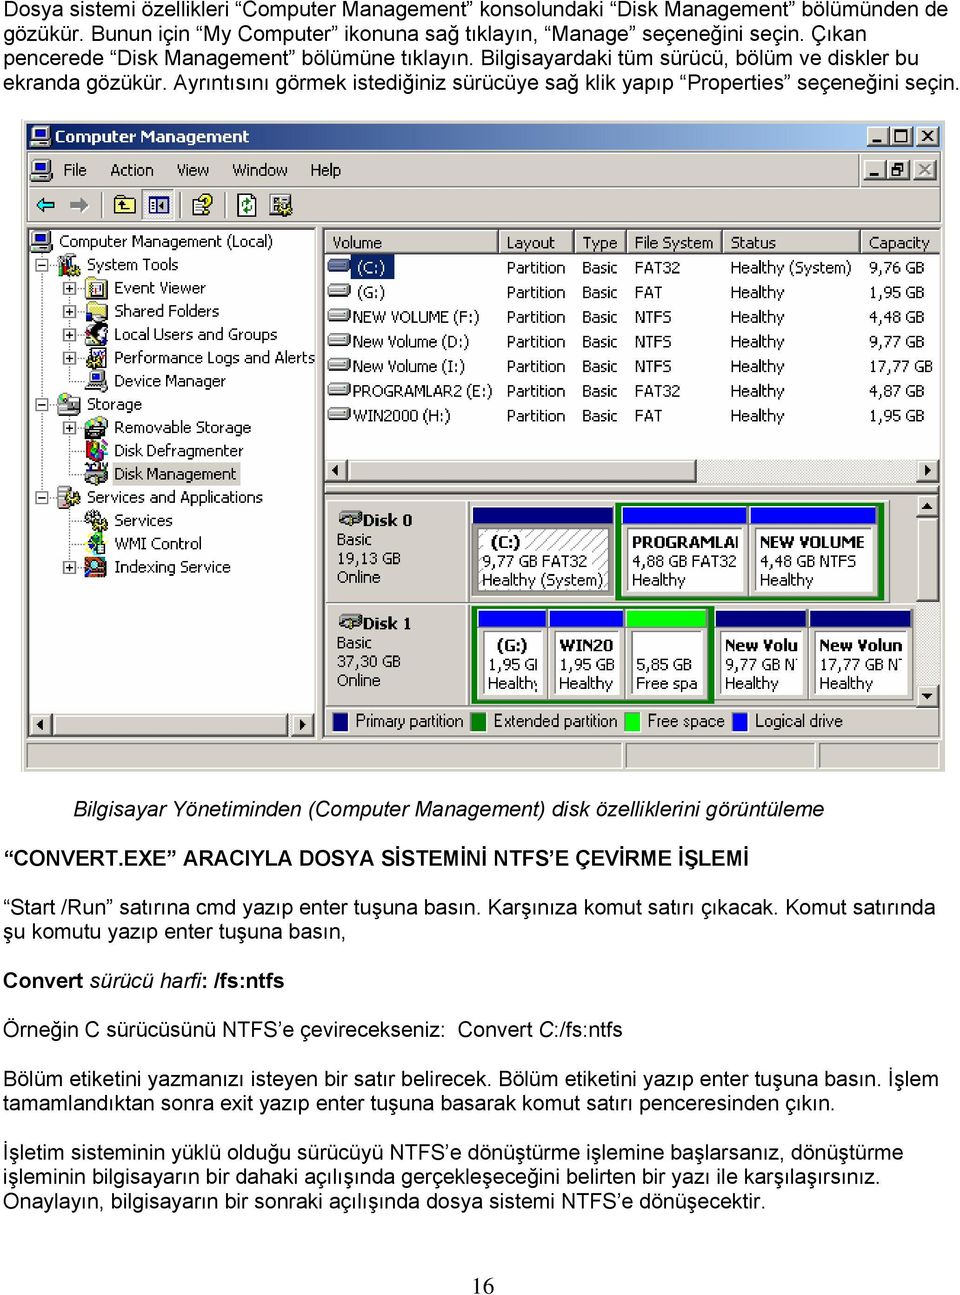 Bilgisayar Yönetiminden (Computer Management) disk özelliklerini görüntüleme CONVERT.EXE ARACIYLA DOSYA SİSTEMİNİ NTFS E ÇEVİRME İŞLEMİ Start /Run satırına cmd yazıp enter tuşuna basın.